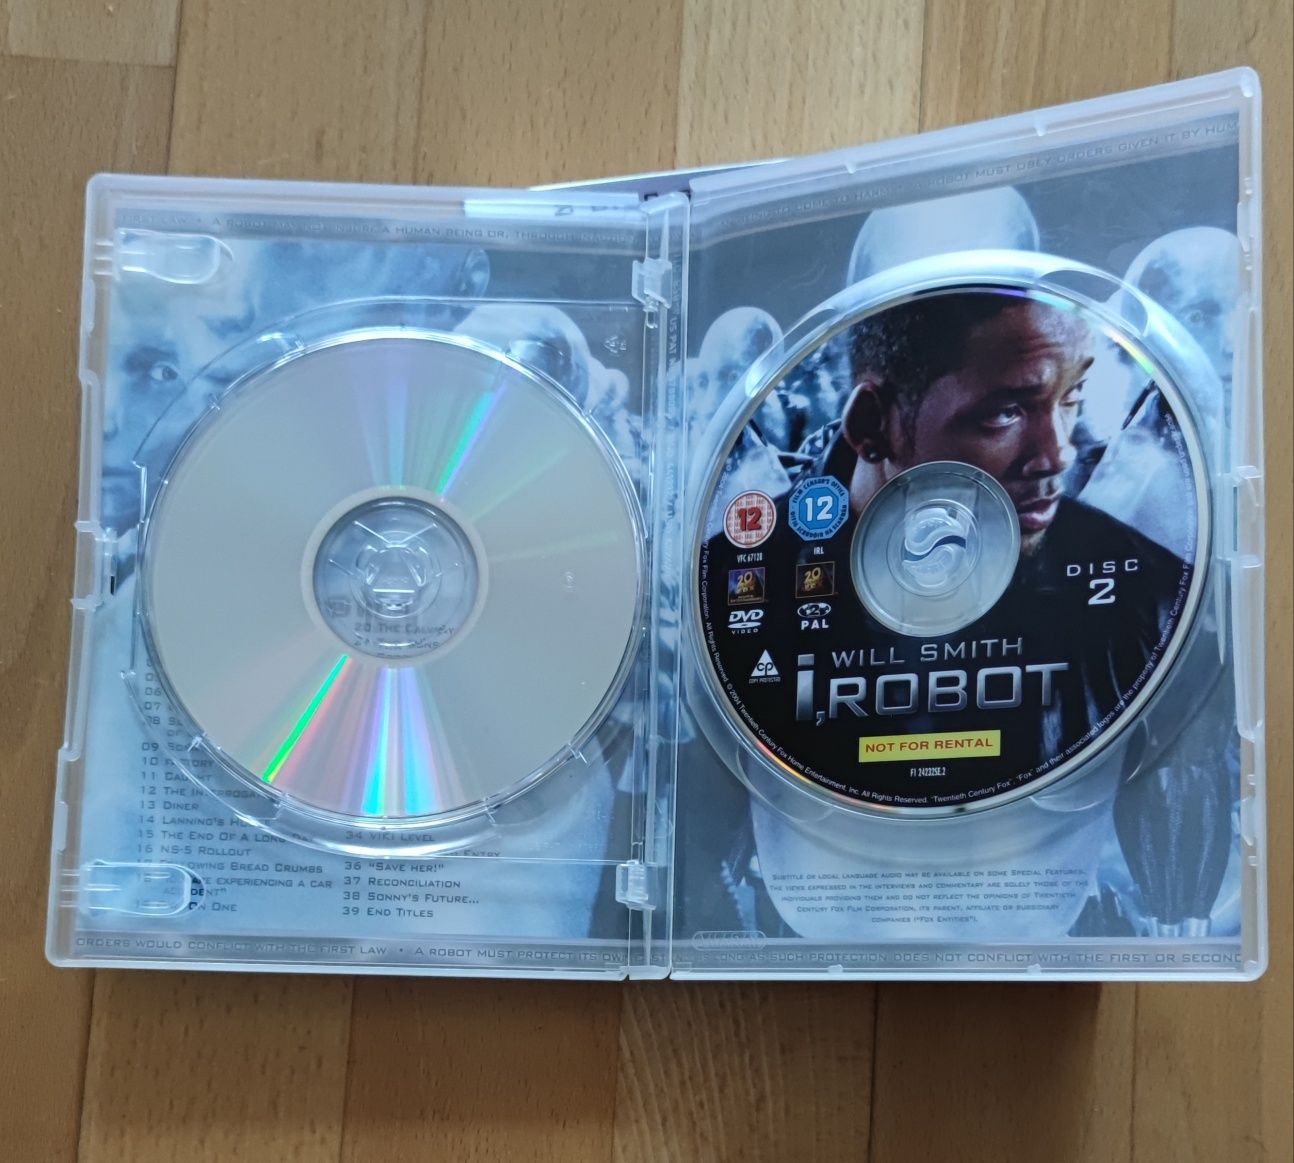 I, Robot - Eu, Robot - Edição Especial DVD